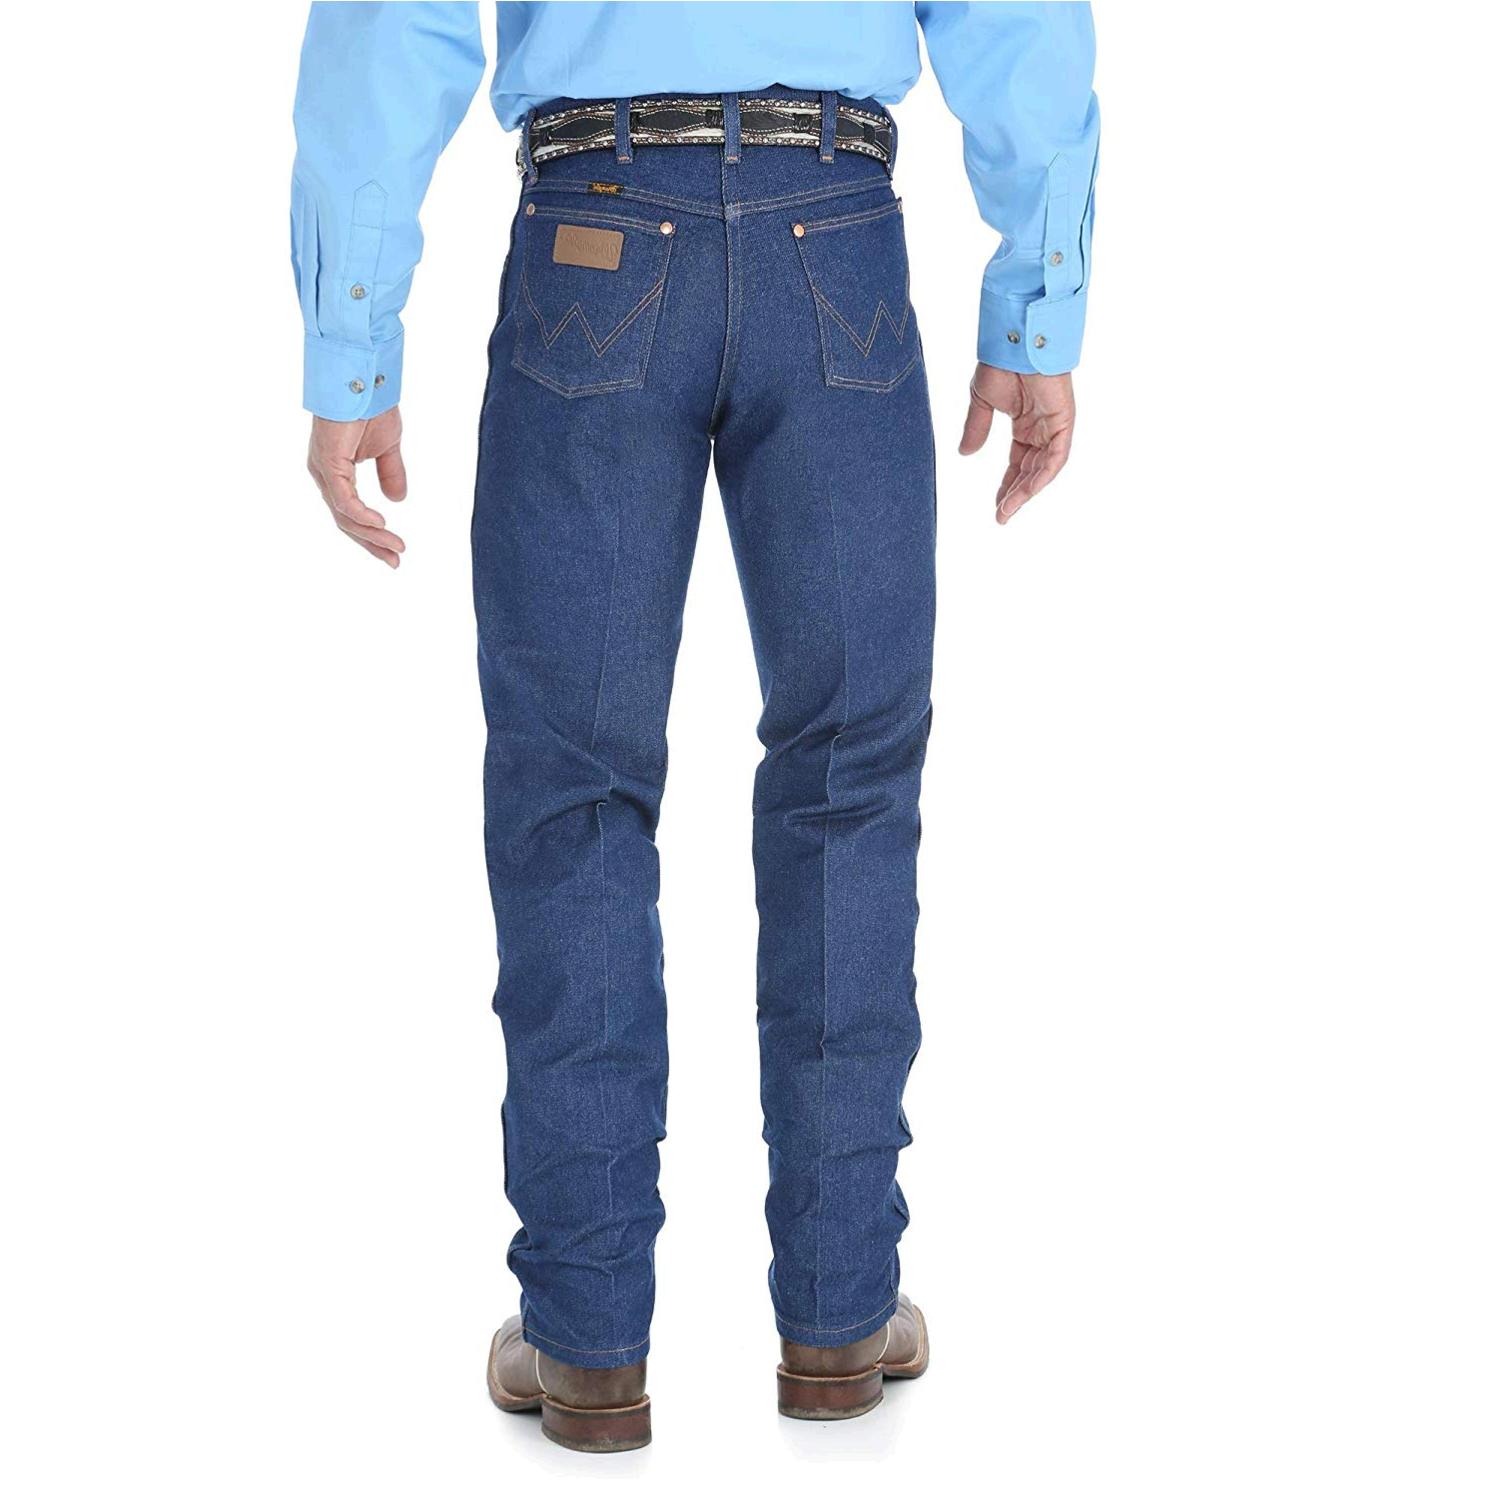 Wrangler Men's Tall Cowboy Cut Jean Original Fit, Rigid Indigo, Size ...